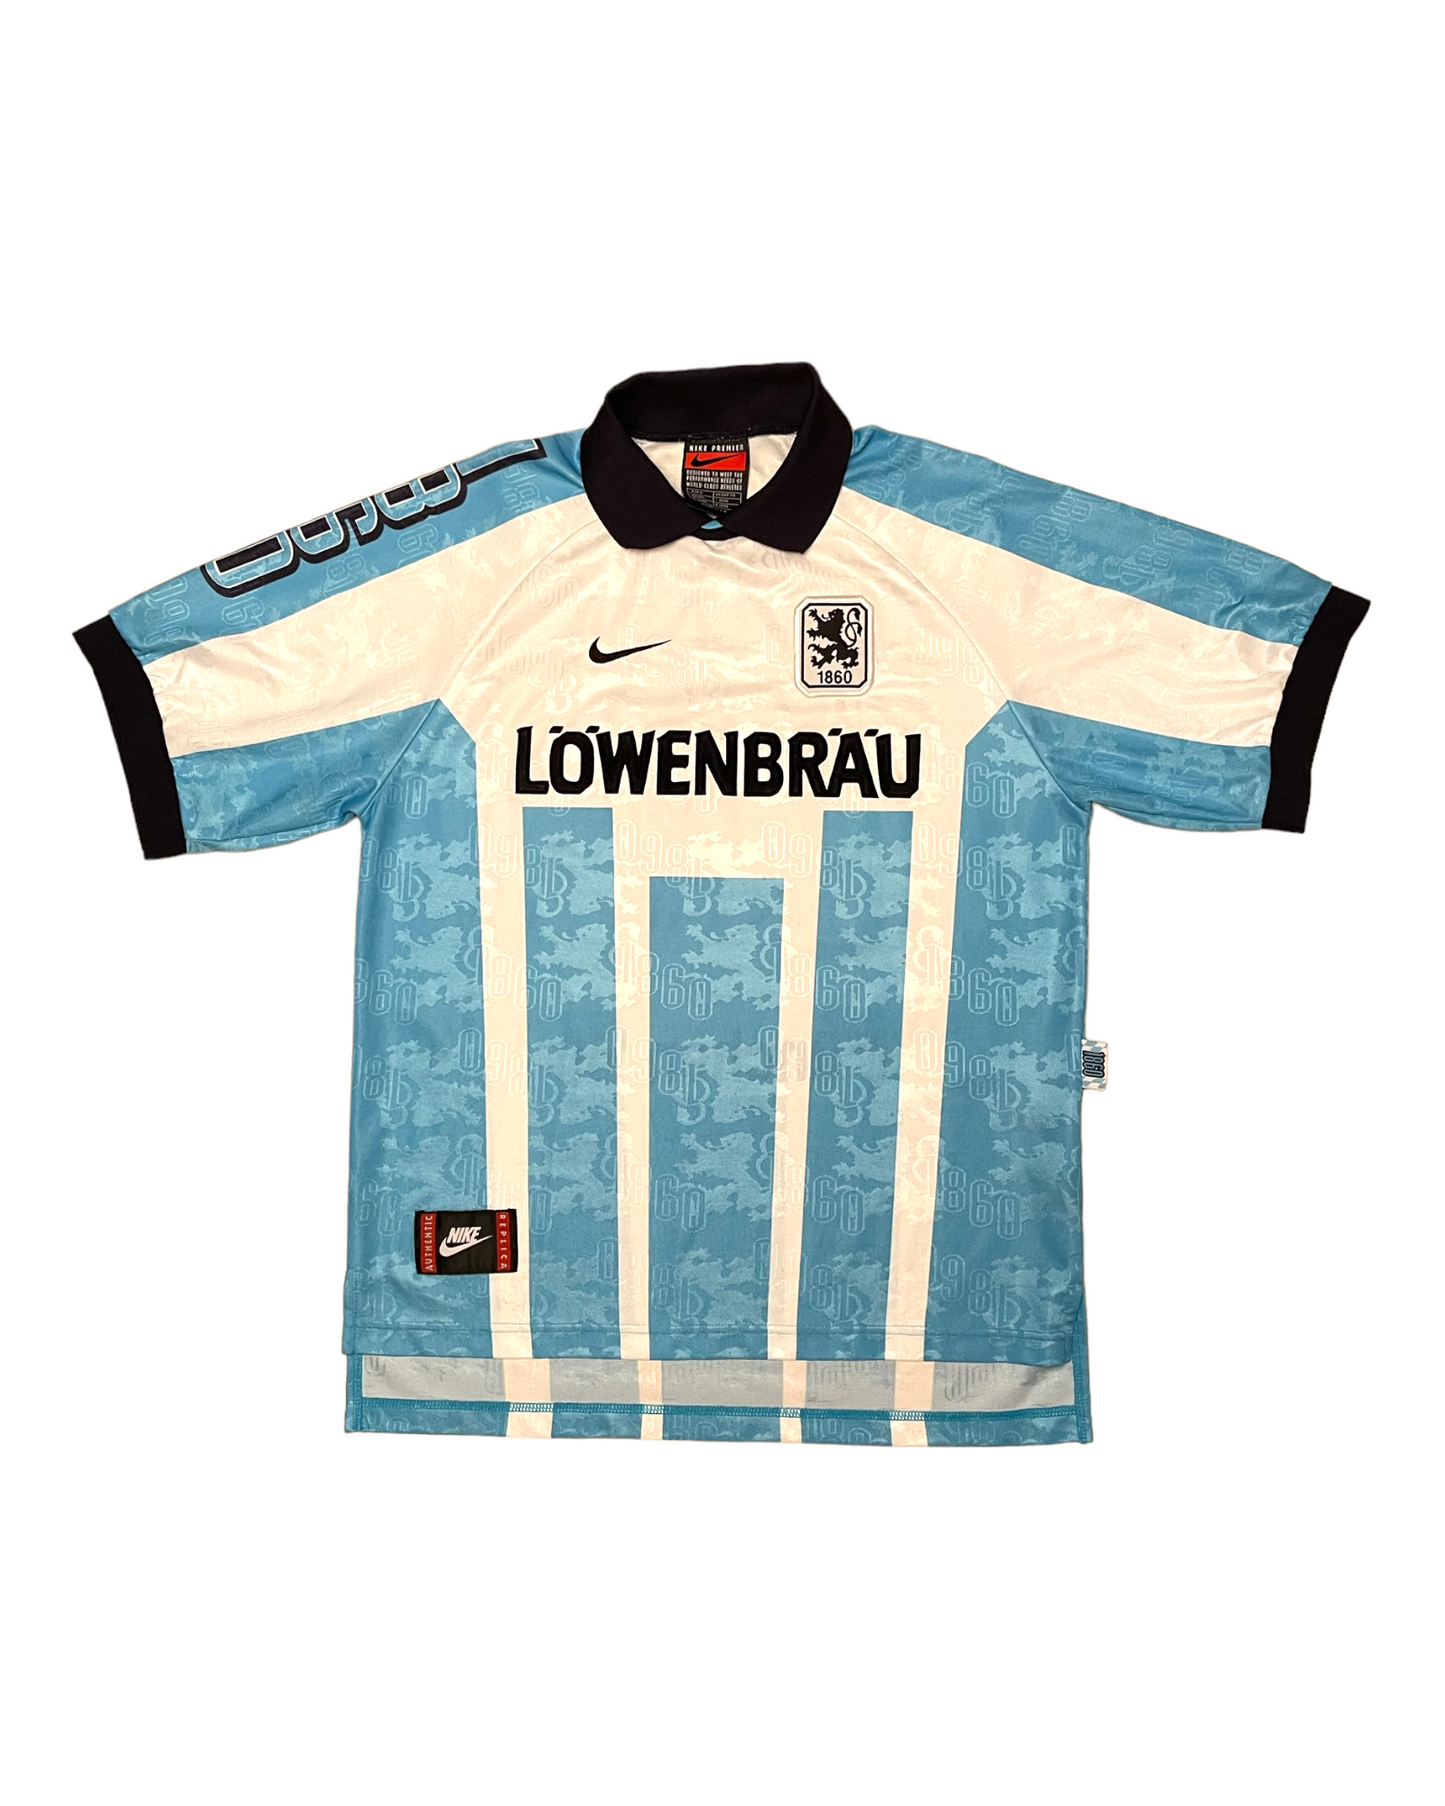 TSV München Munich 1860 Nike Premier 1996 - 1997 Home Football Shirt Size M Lowenbrau White Blue